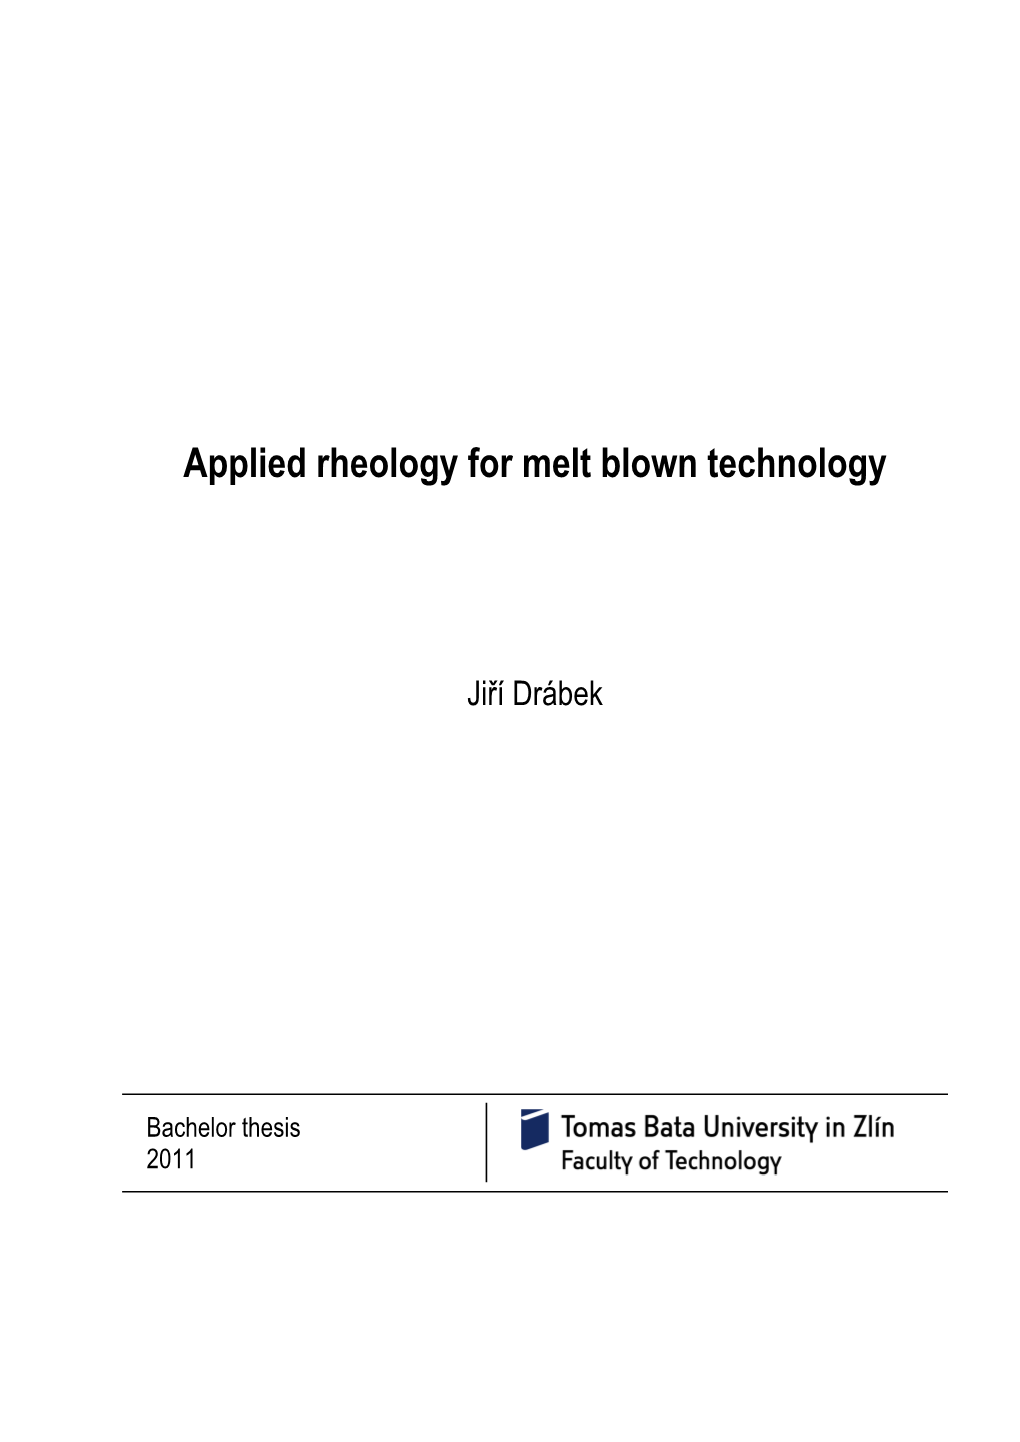 Applied Rheology for Melt Blown Technology